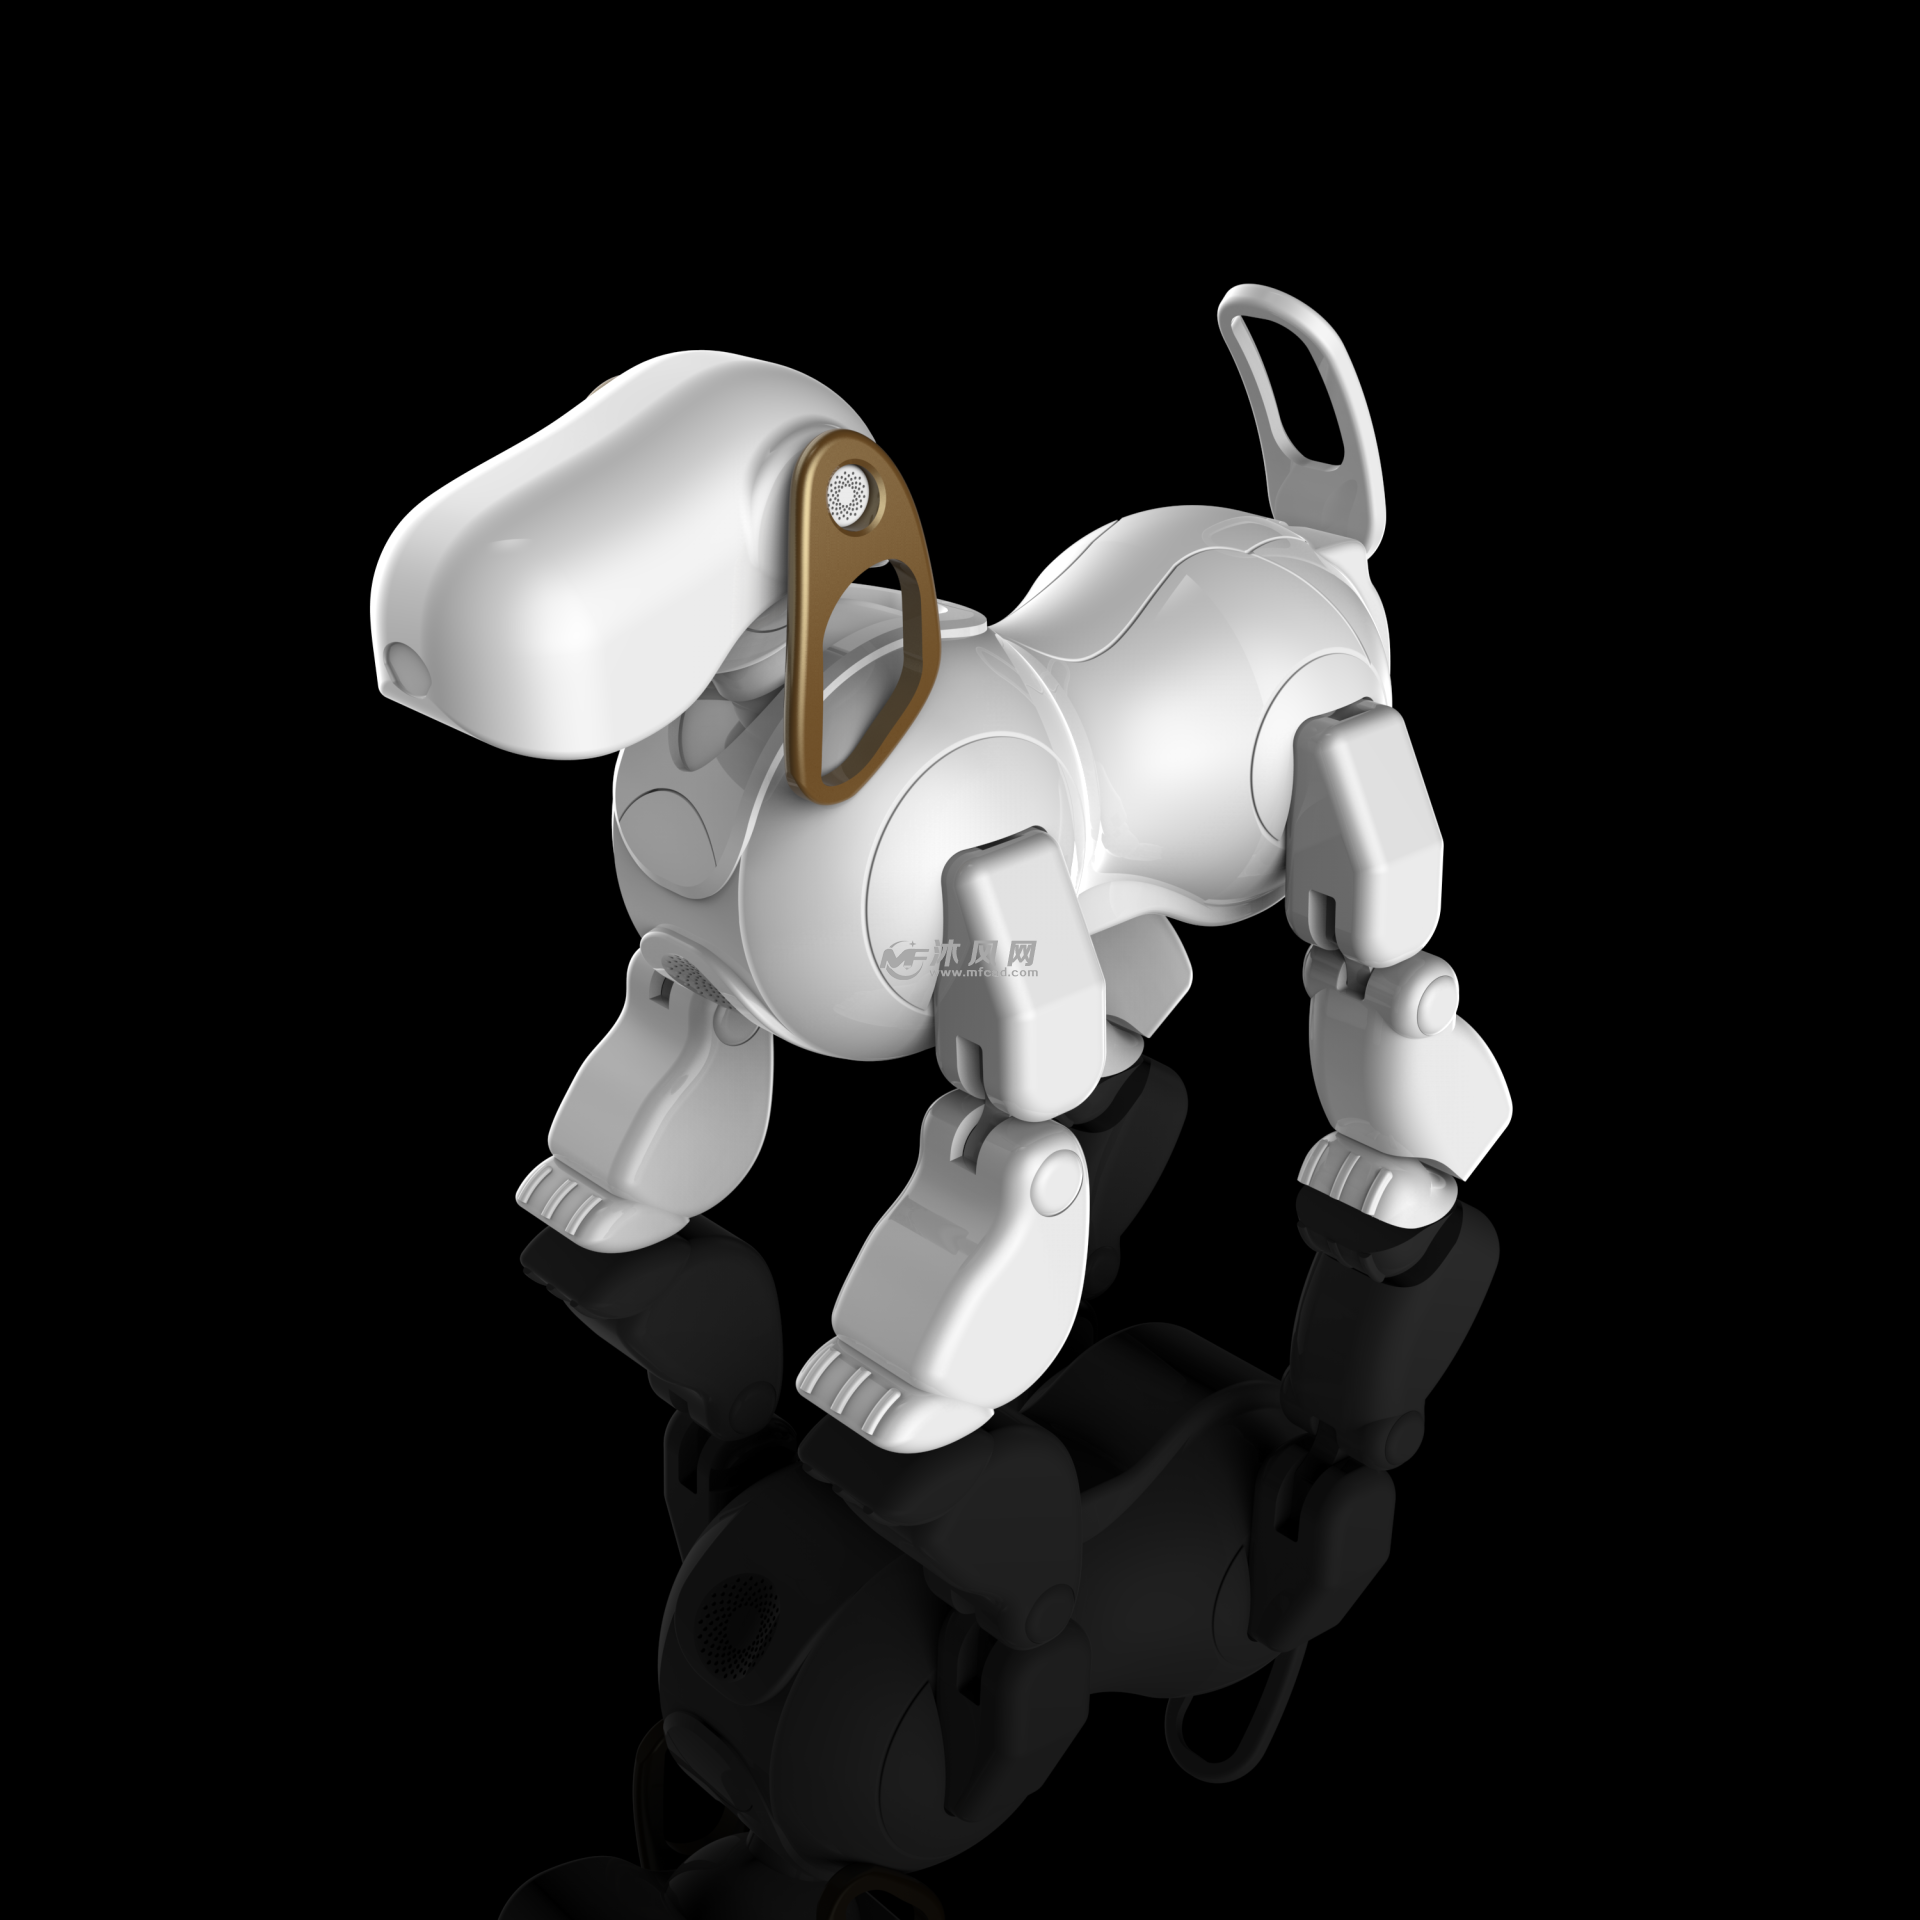 机械狗模型设计 - 机器人模型图纸 - 沐风网